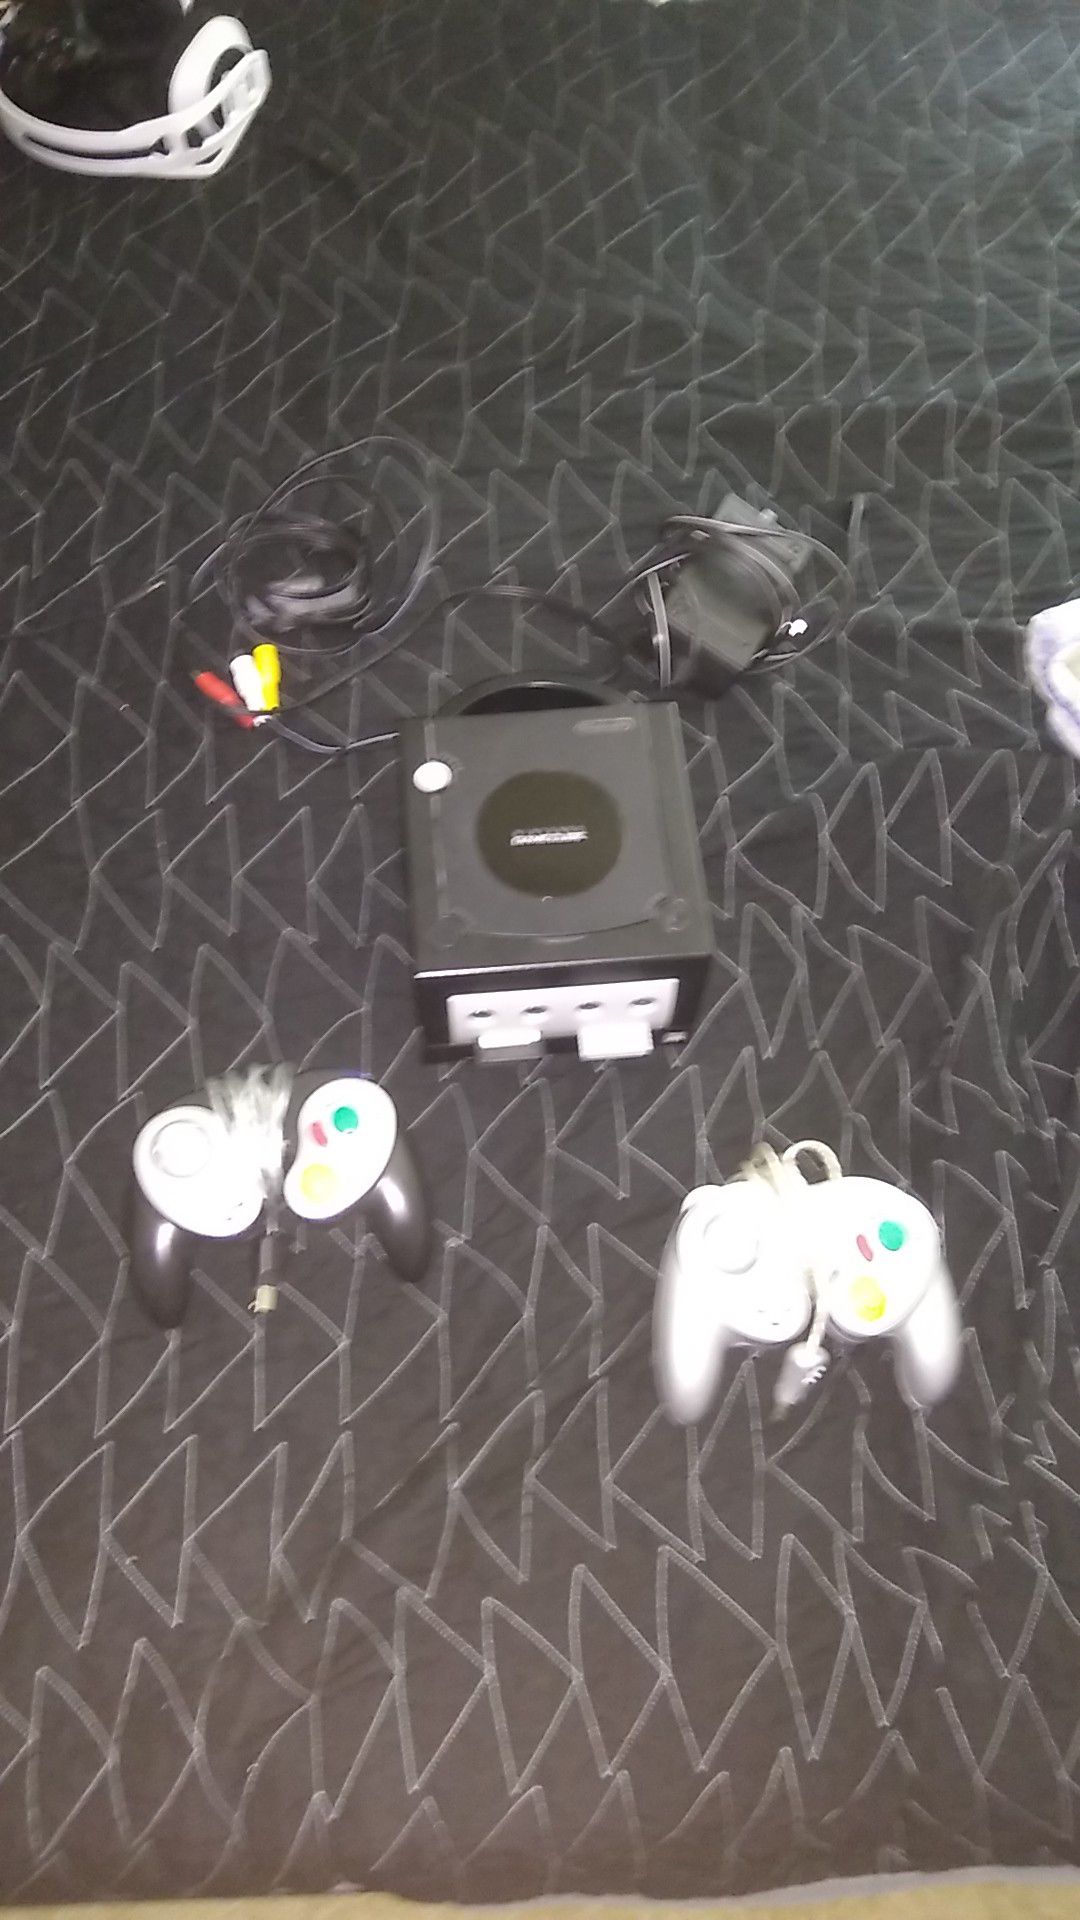 GameCube system